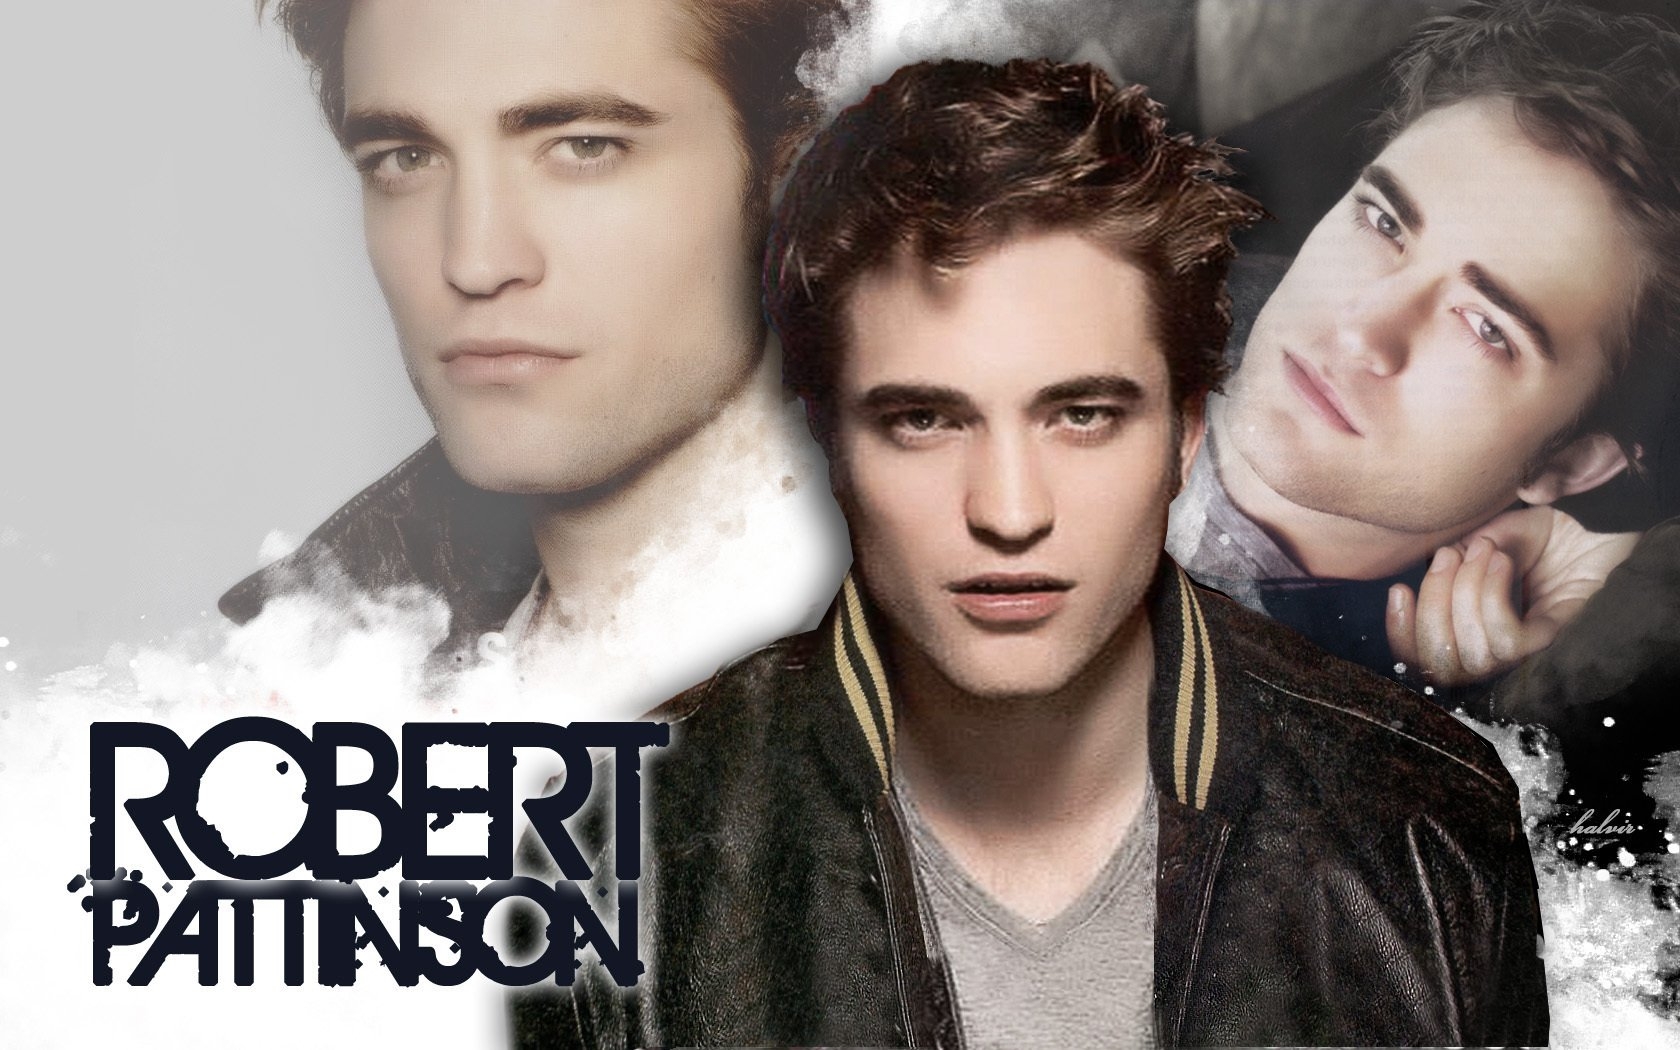 Robert-Pattinson-twilight-series-8562694-1680-1050 -  